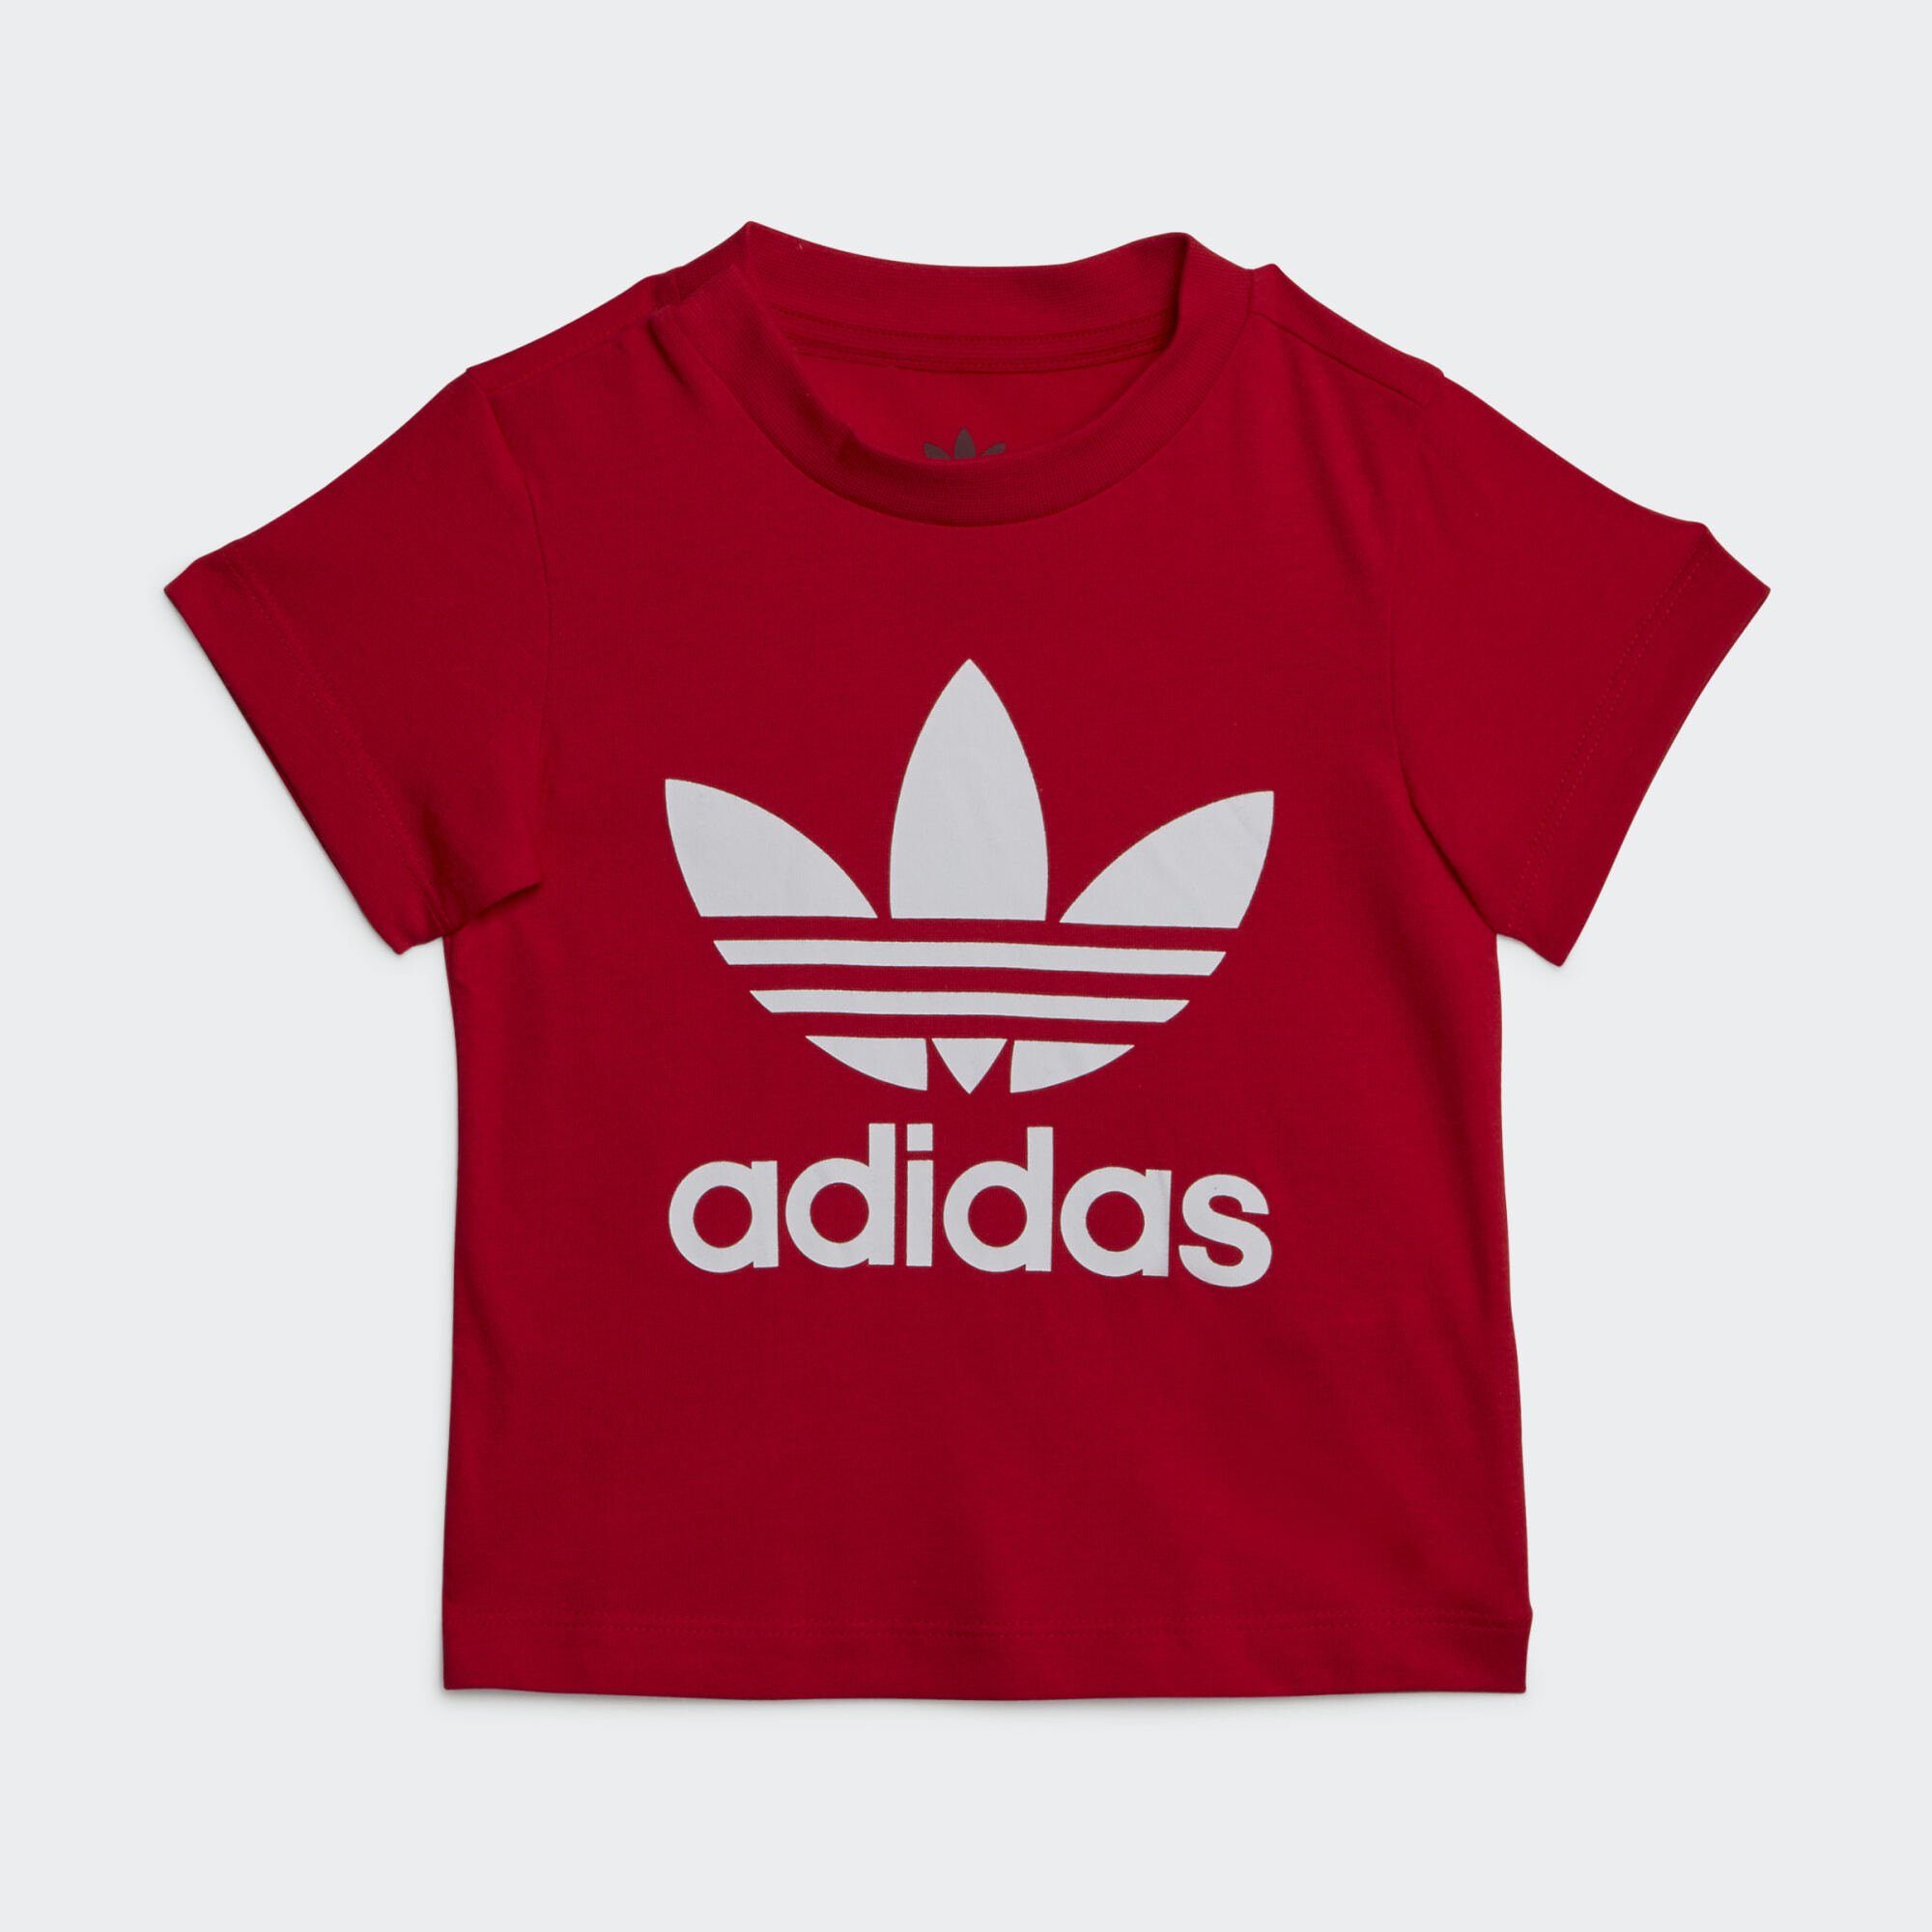 adidas TREFOIL T-Shirt Originals Scarlet T-SHIRT Better